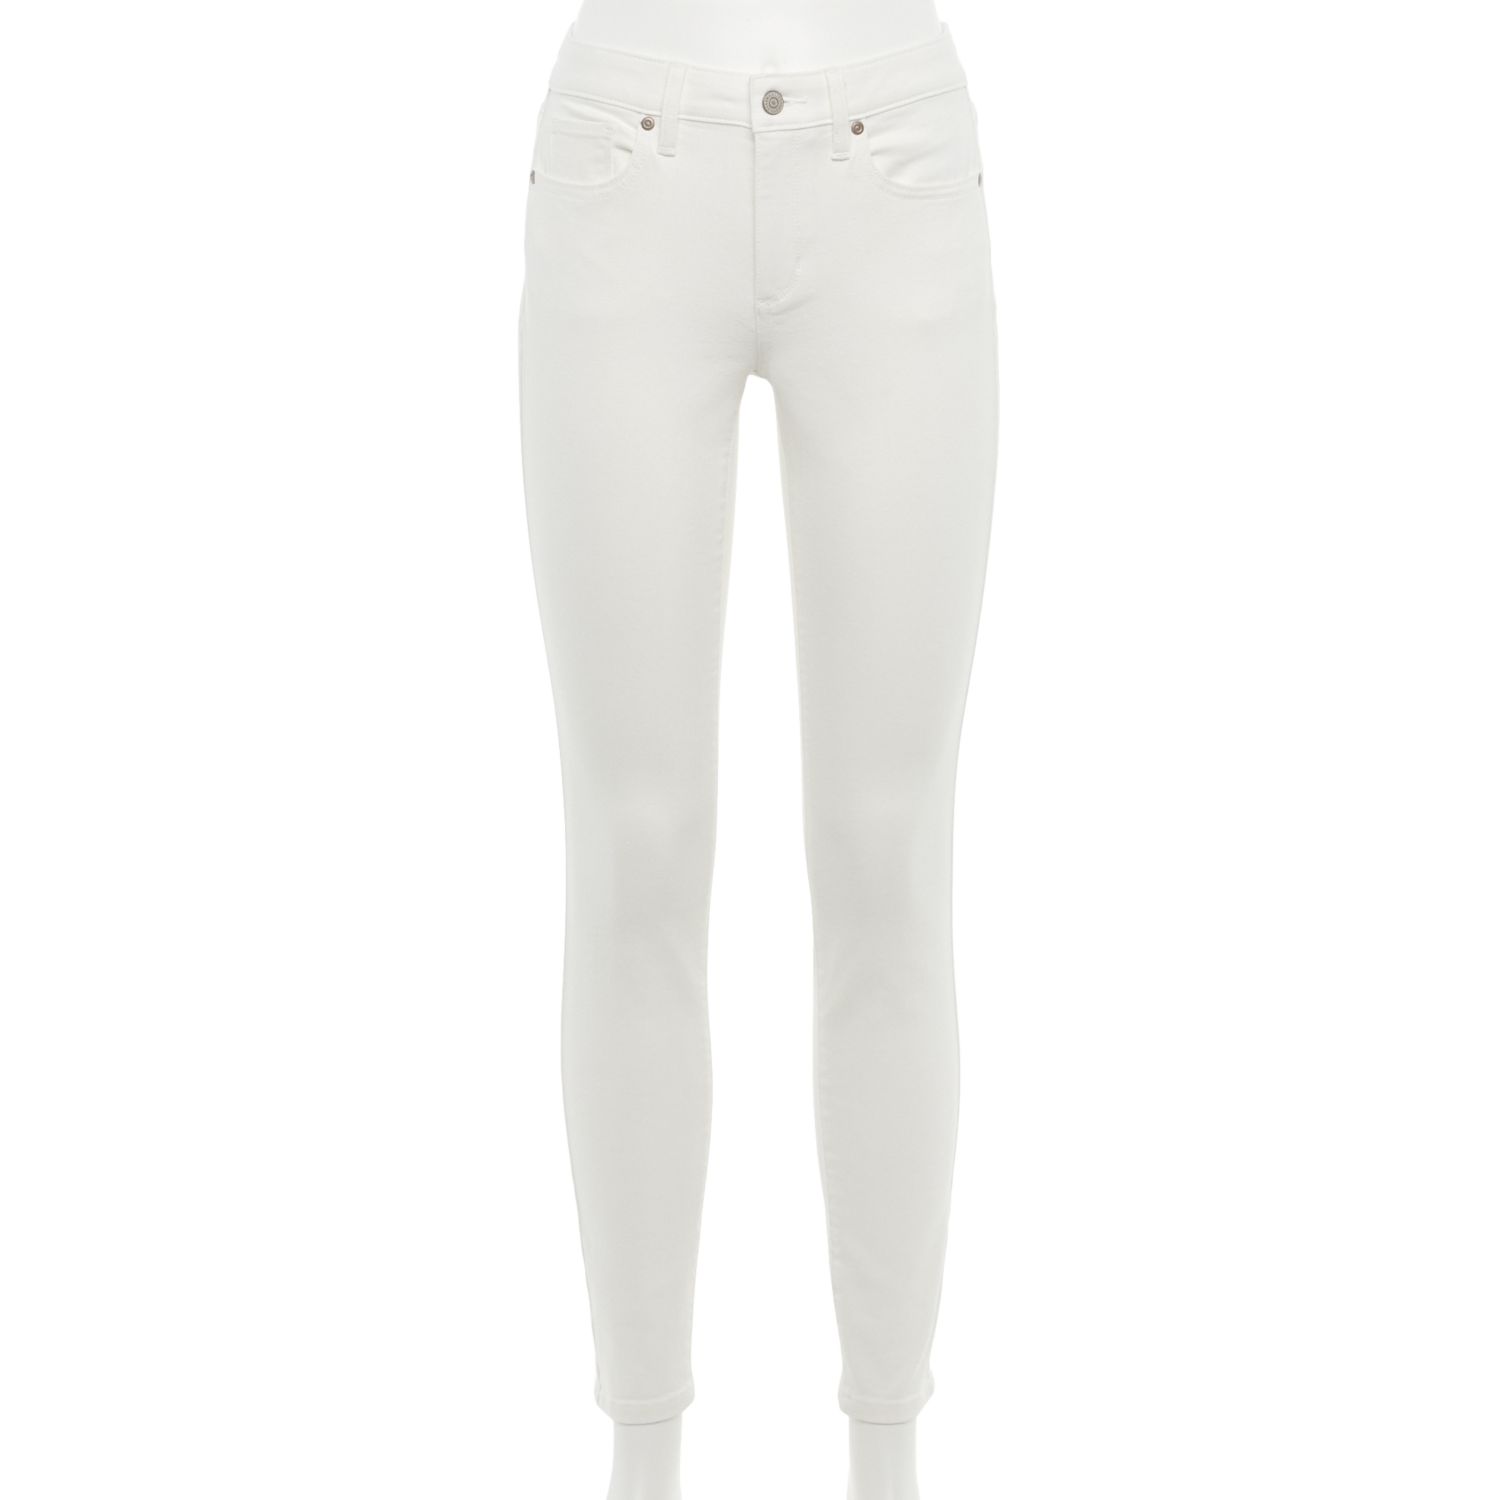 White Skinny Jeans Womens | Kohl's